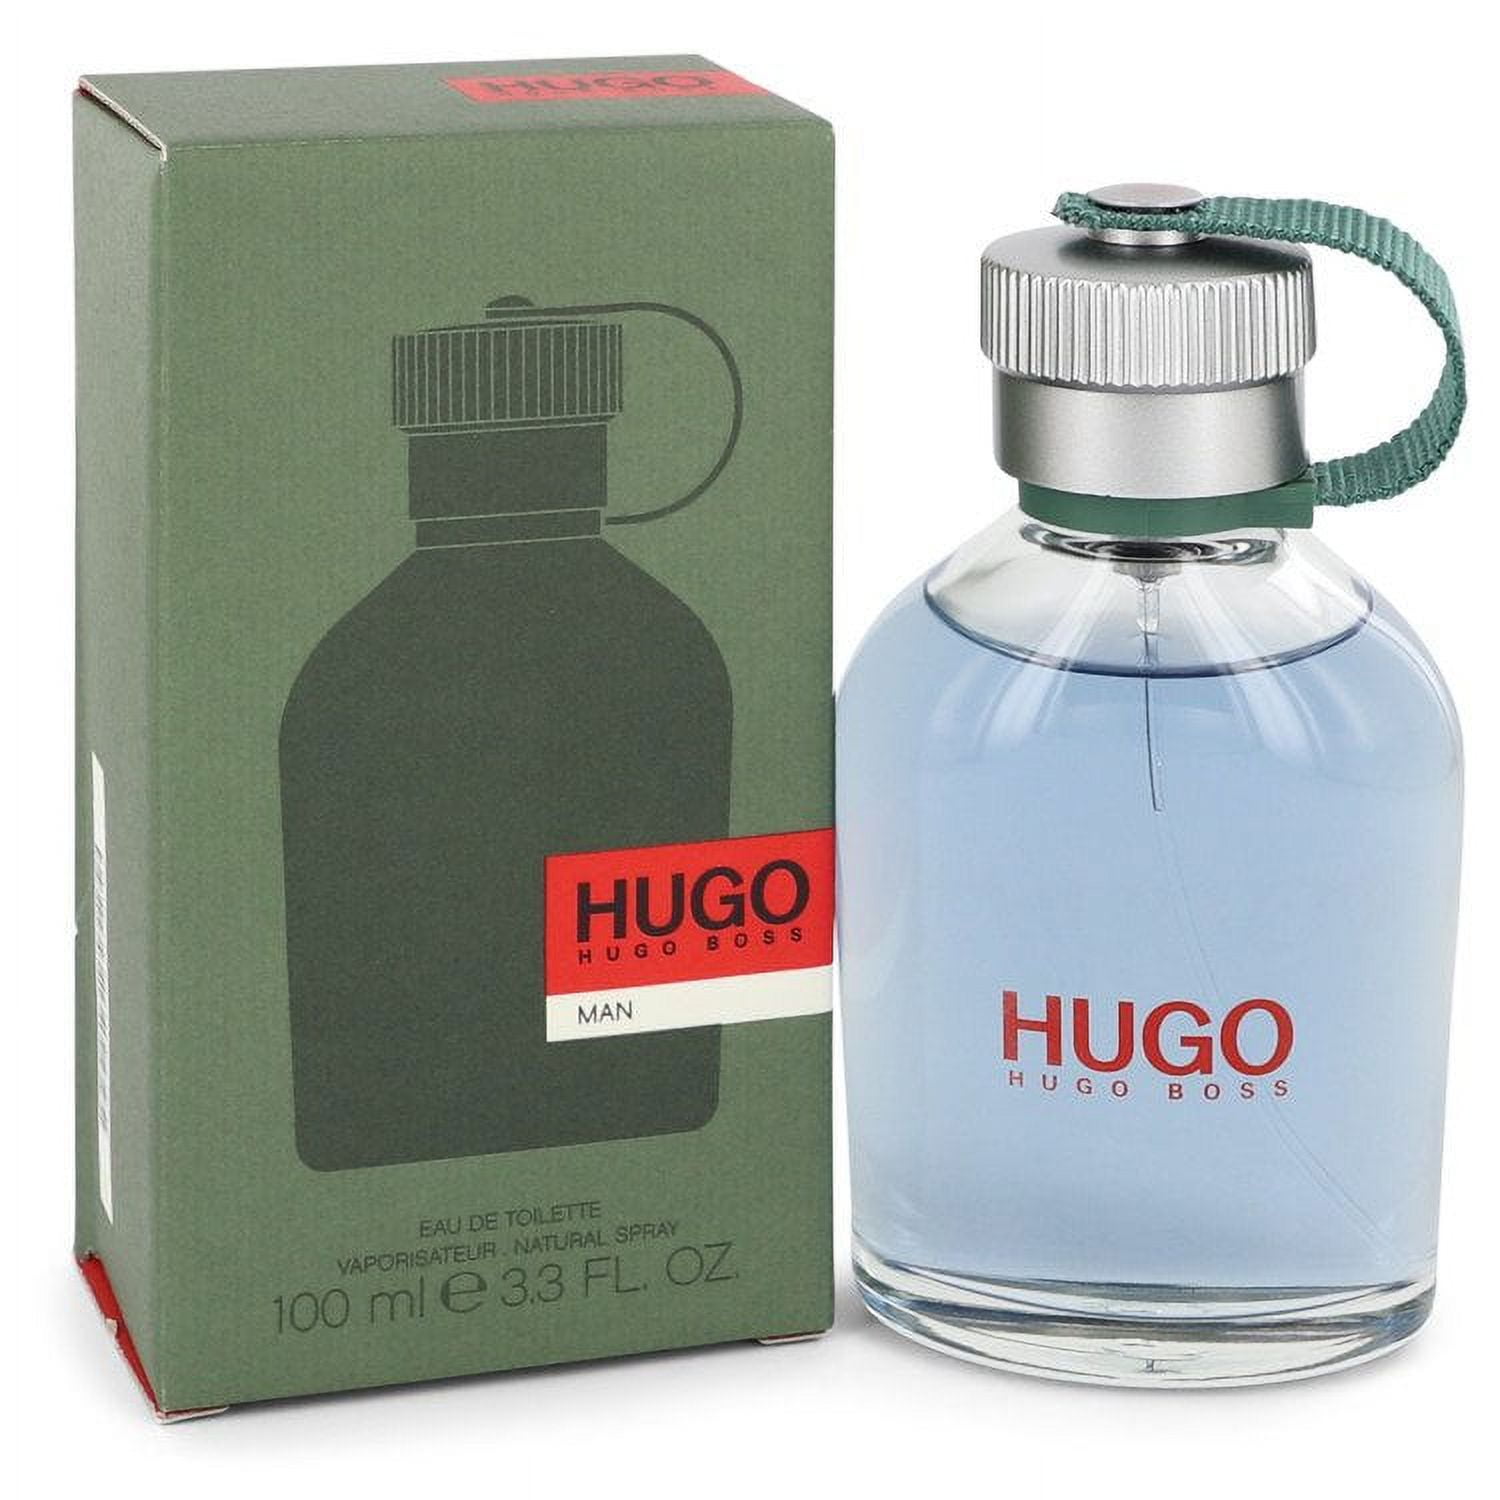 HUGO by Hugo Boss - Walmart.com